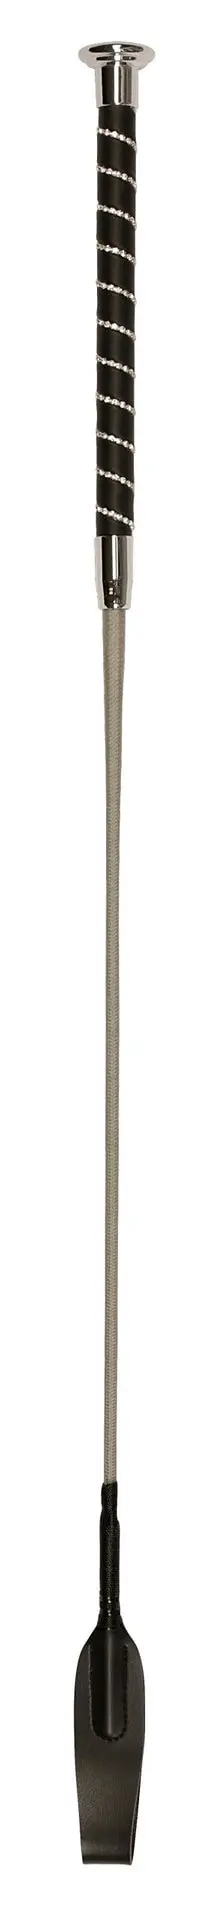 Springgerte Glitzer, 65 cm, silber, mit Schlag